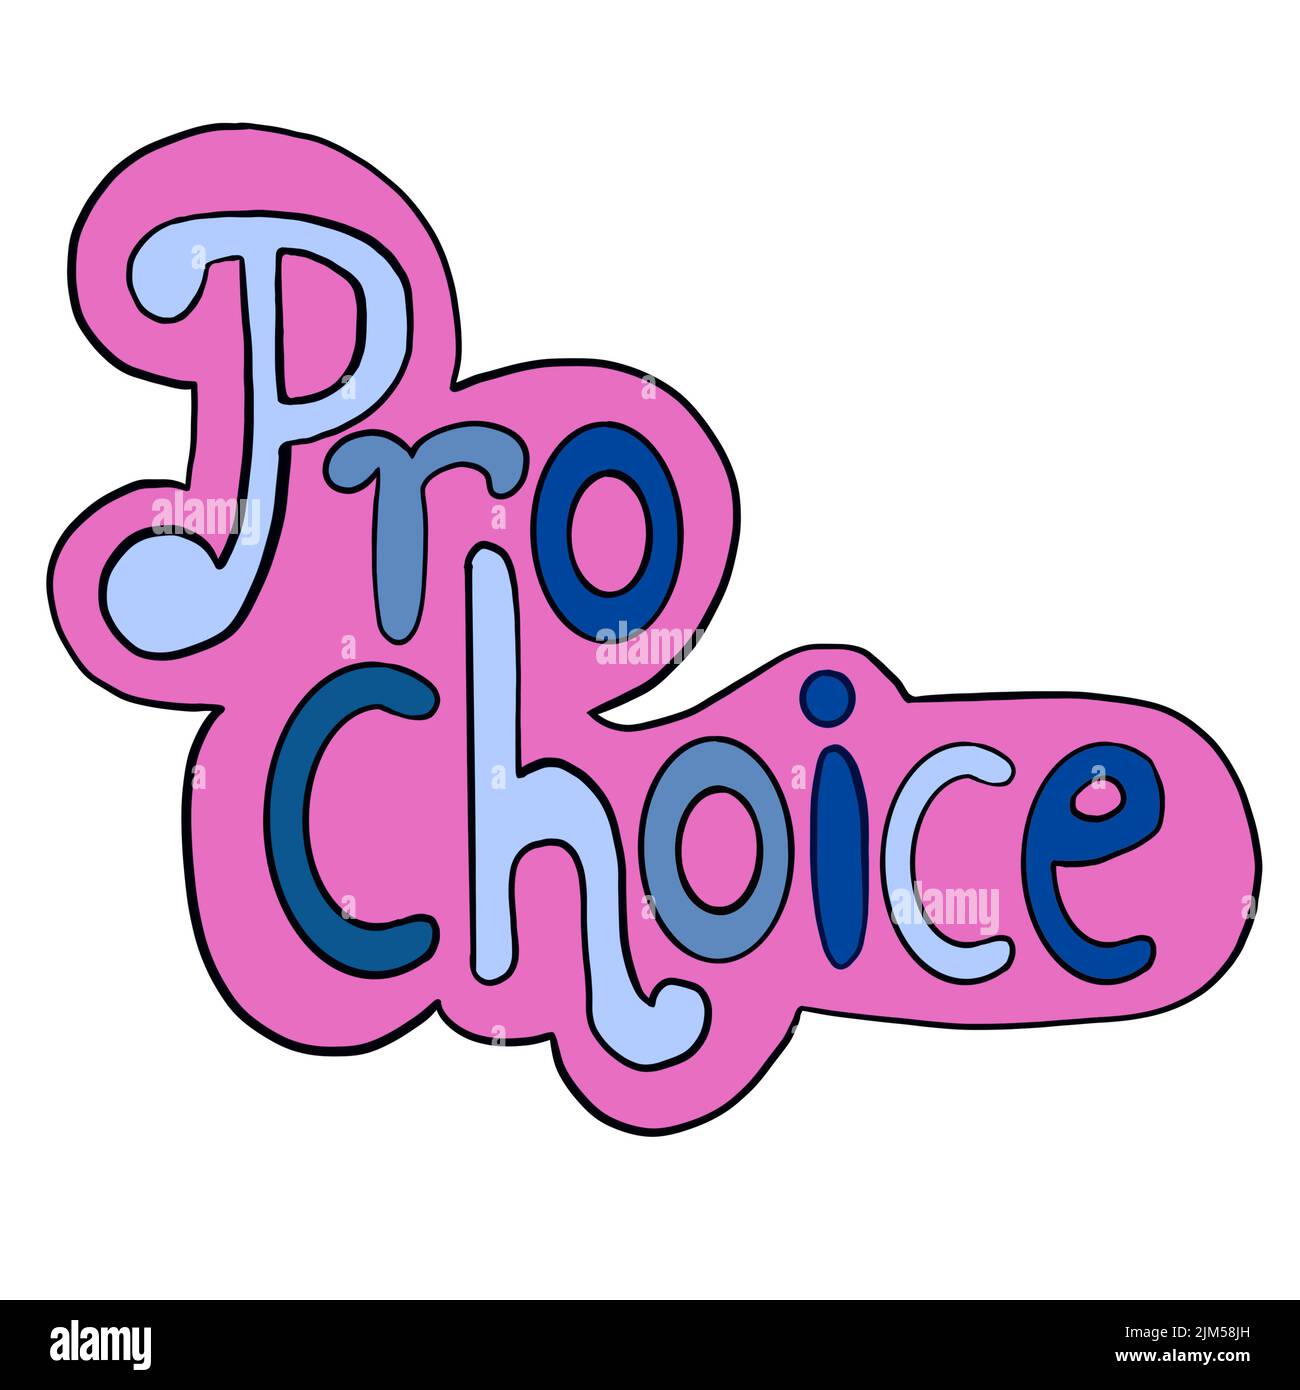 Pro Choice Wörter im pinkblauen Sticker-Stil. Handgezeichnete Illustration für Rechte auf reproduktive Abtreibung, feministisches Konzept, Feminismus Healthcare Roe V wade Banner Stockfoto